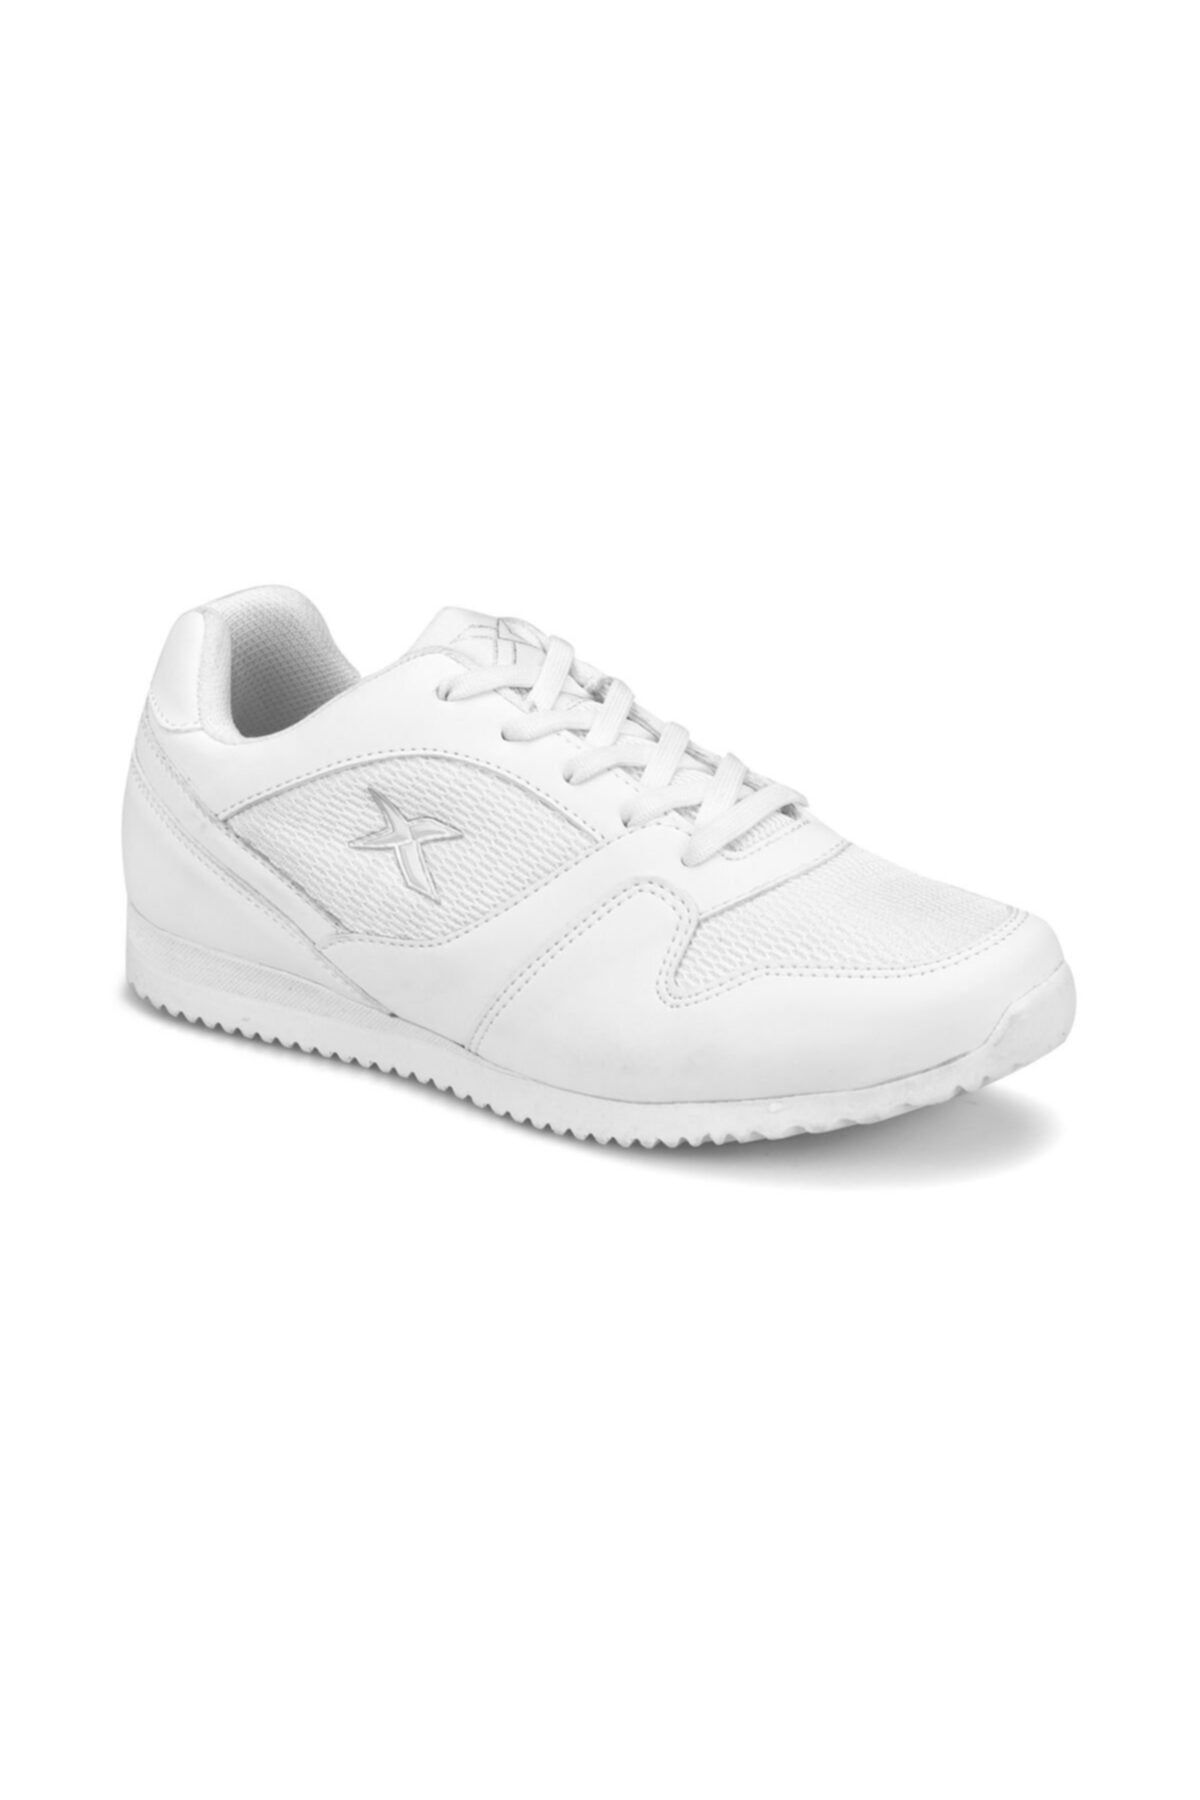 Kinetix ODELL Beyaz Kadın Sneaker Ayakkabı 100309515